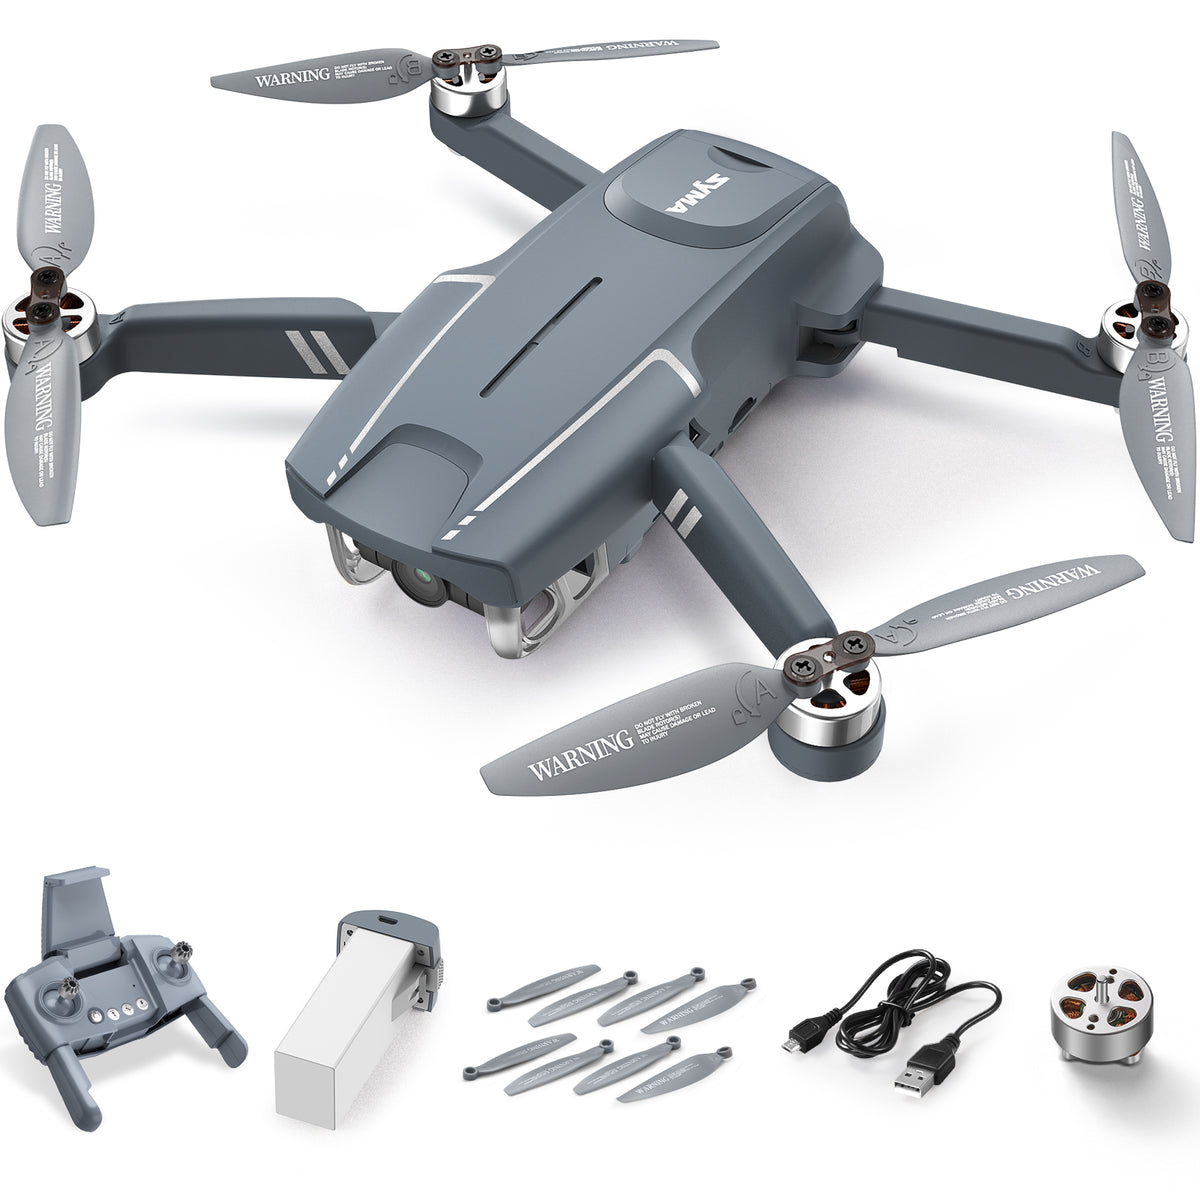 SYMA X650 Drone Accessories